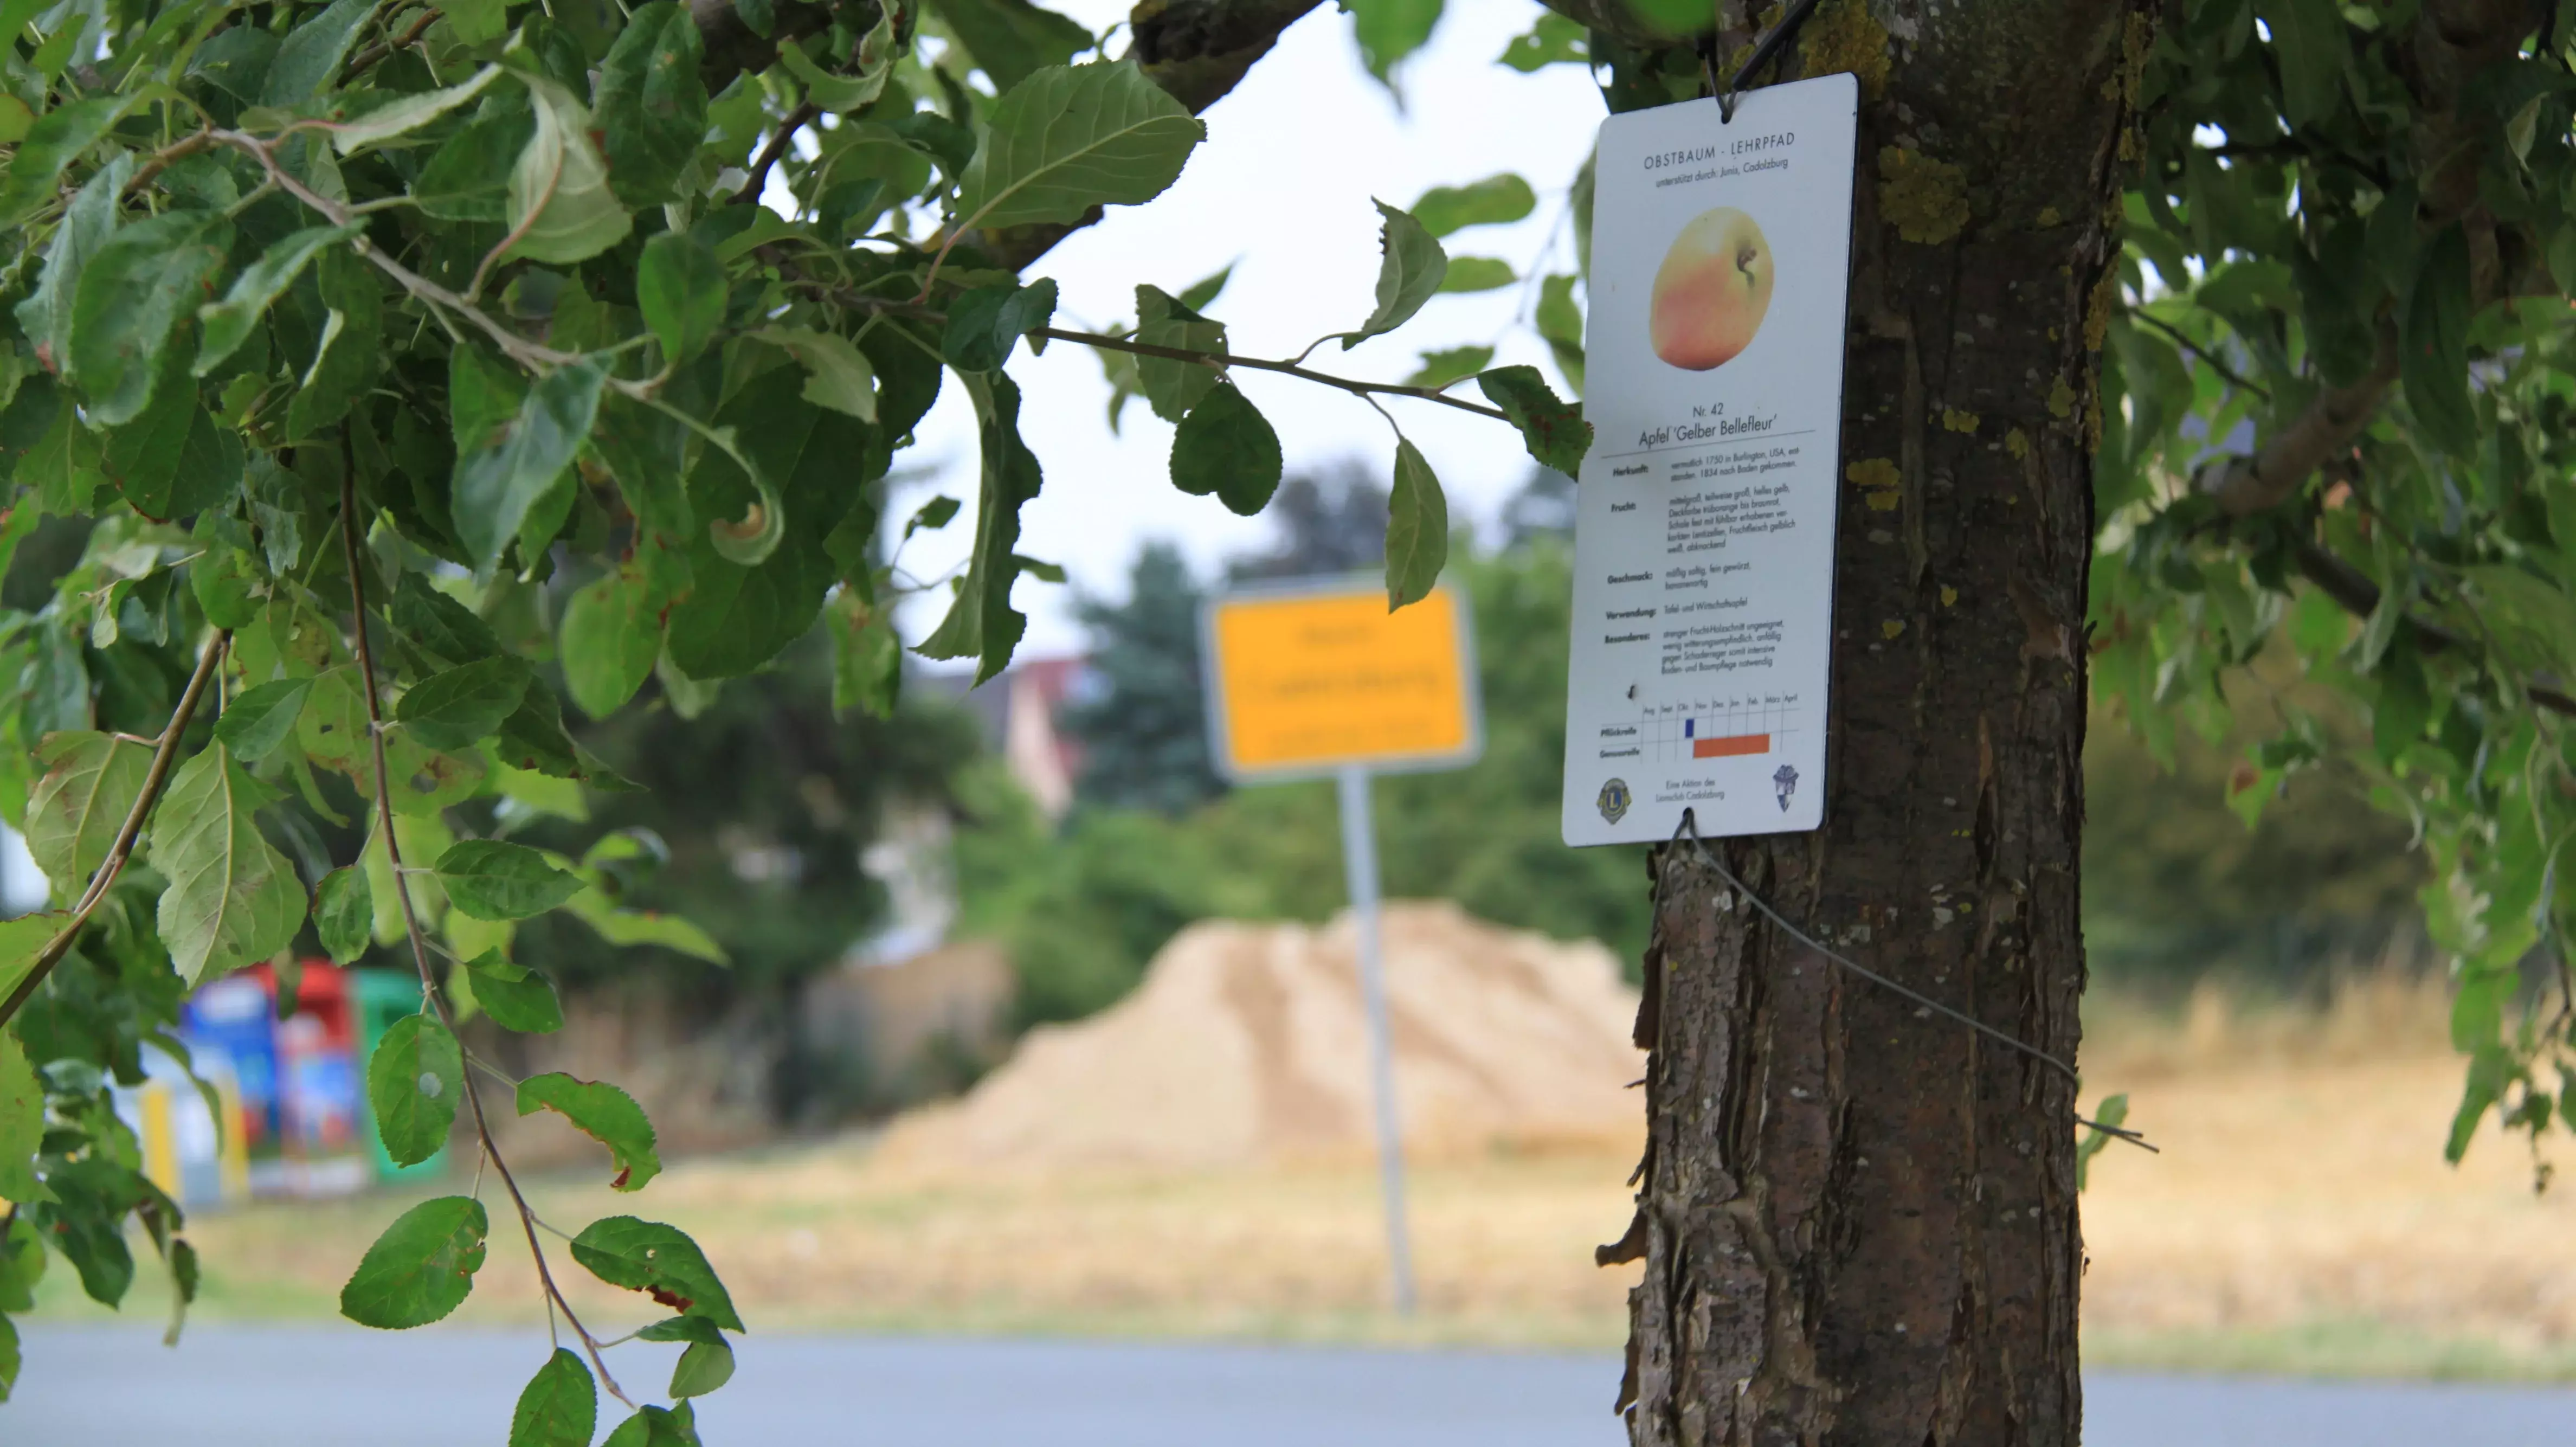 Lehrpfad-Schild und gelbes Band an einem Obstbaum